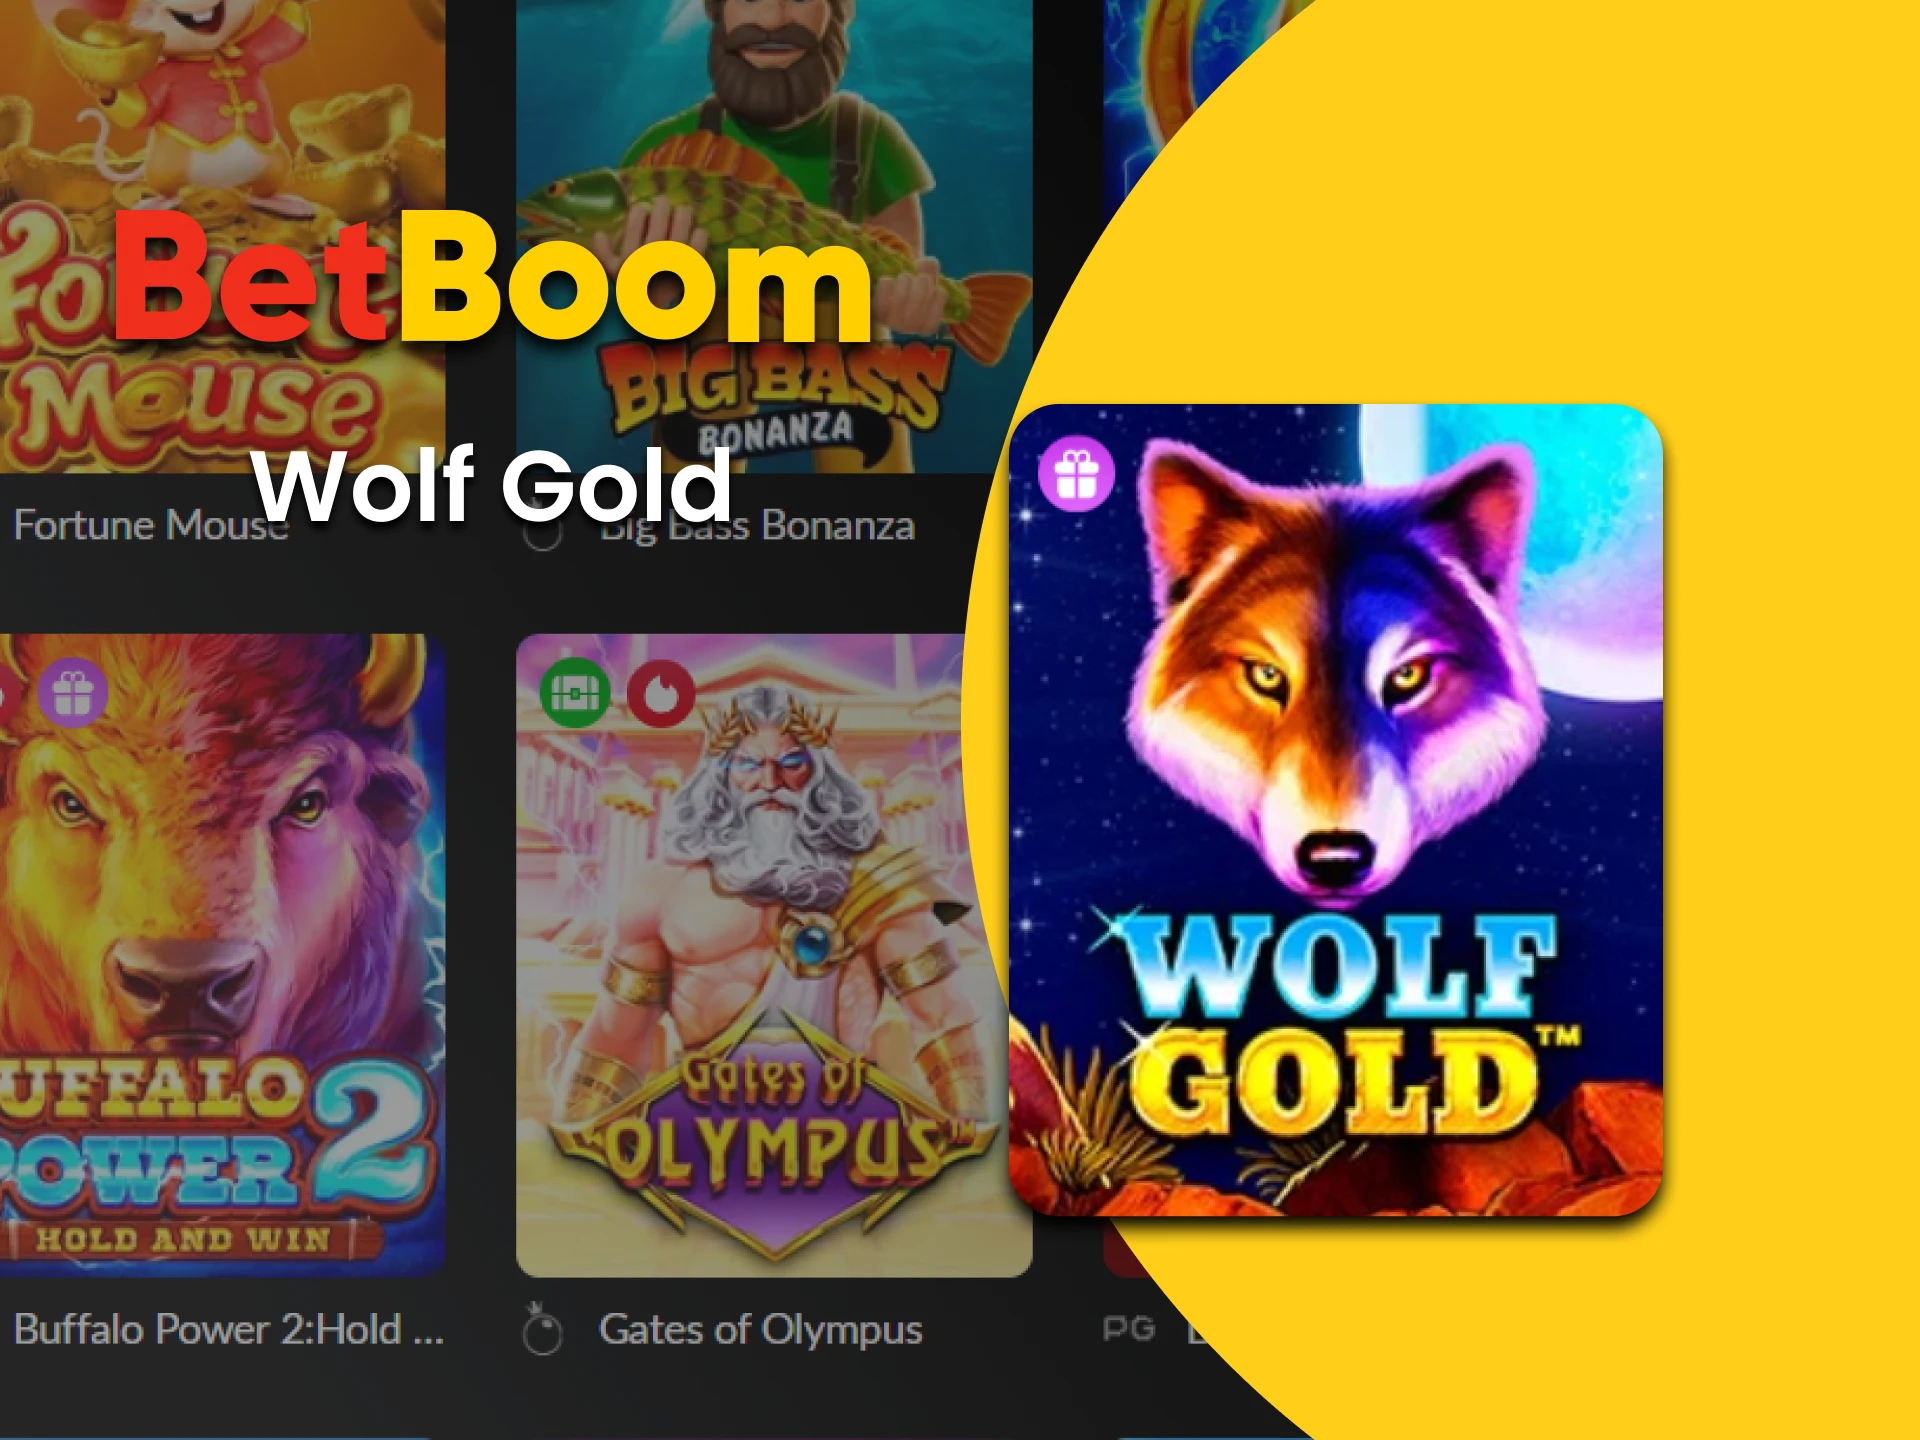 Para jogos de slots no BetBoom, escolha Wolf Gold.